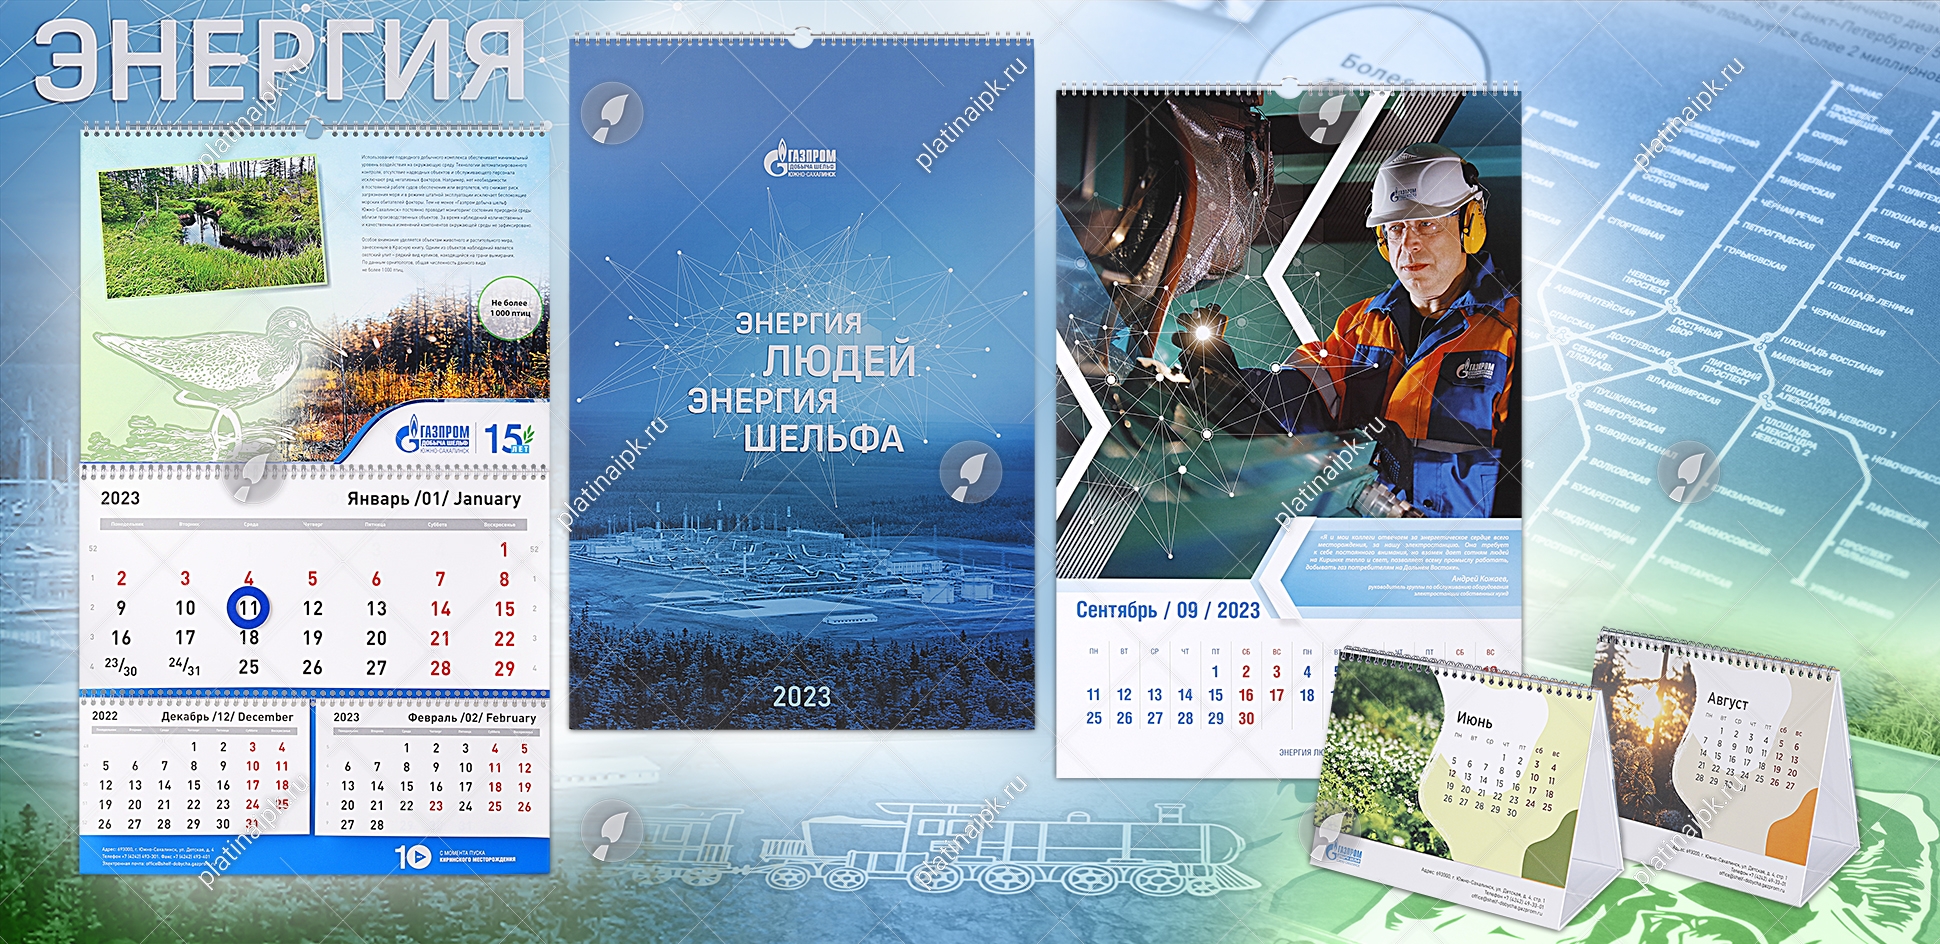 Корпоративный календарь: Энергия людей – энергия шельфа «Газпром добыча  шельф Южно-Сахалинск» — ИПК Platina